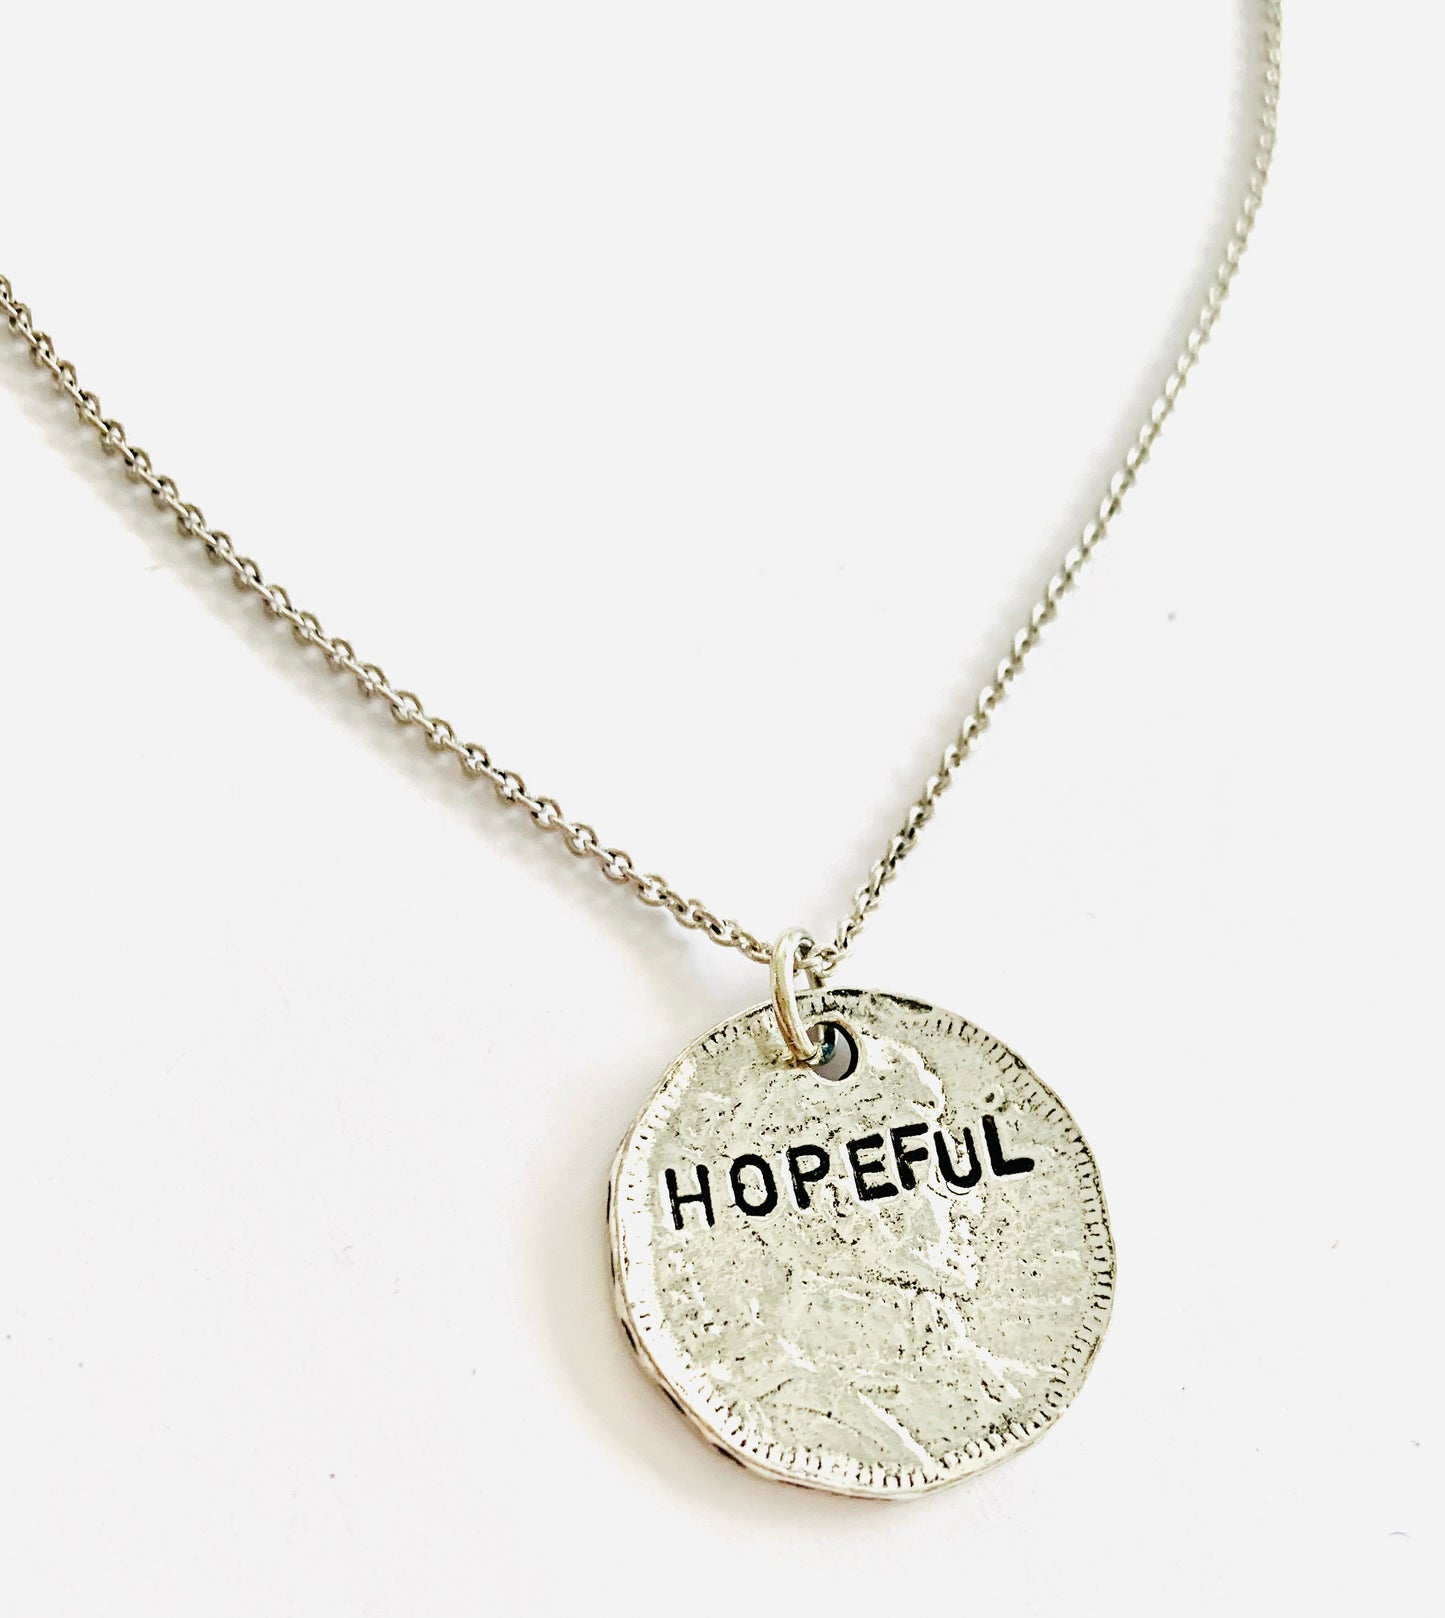 Hopeful Necklace